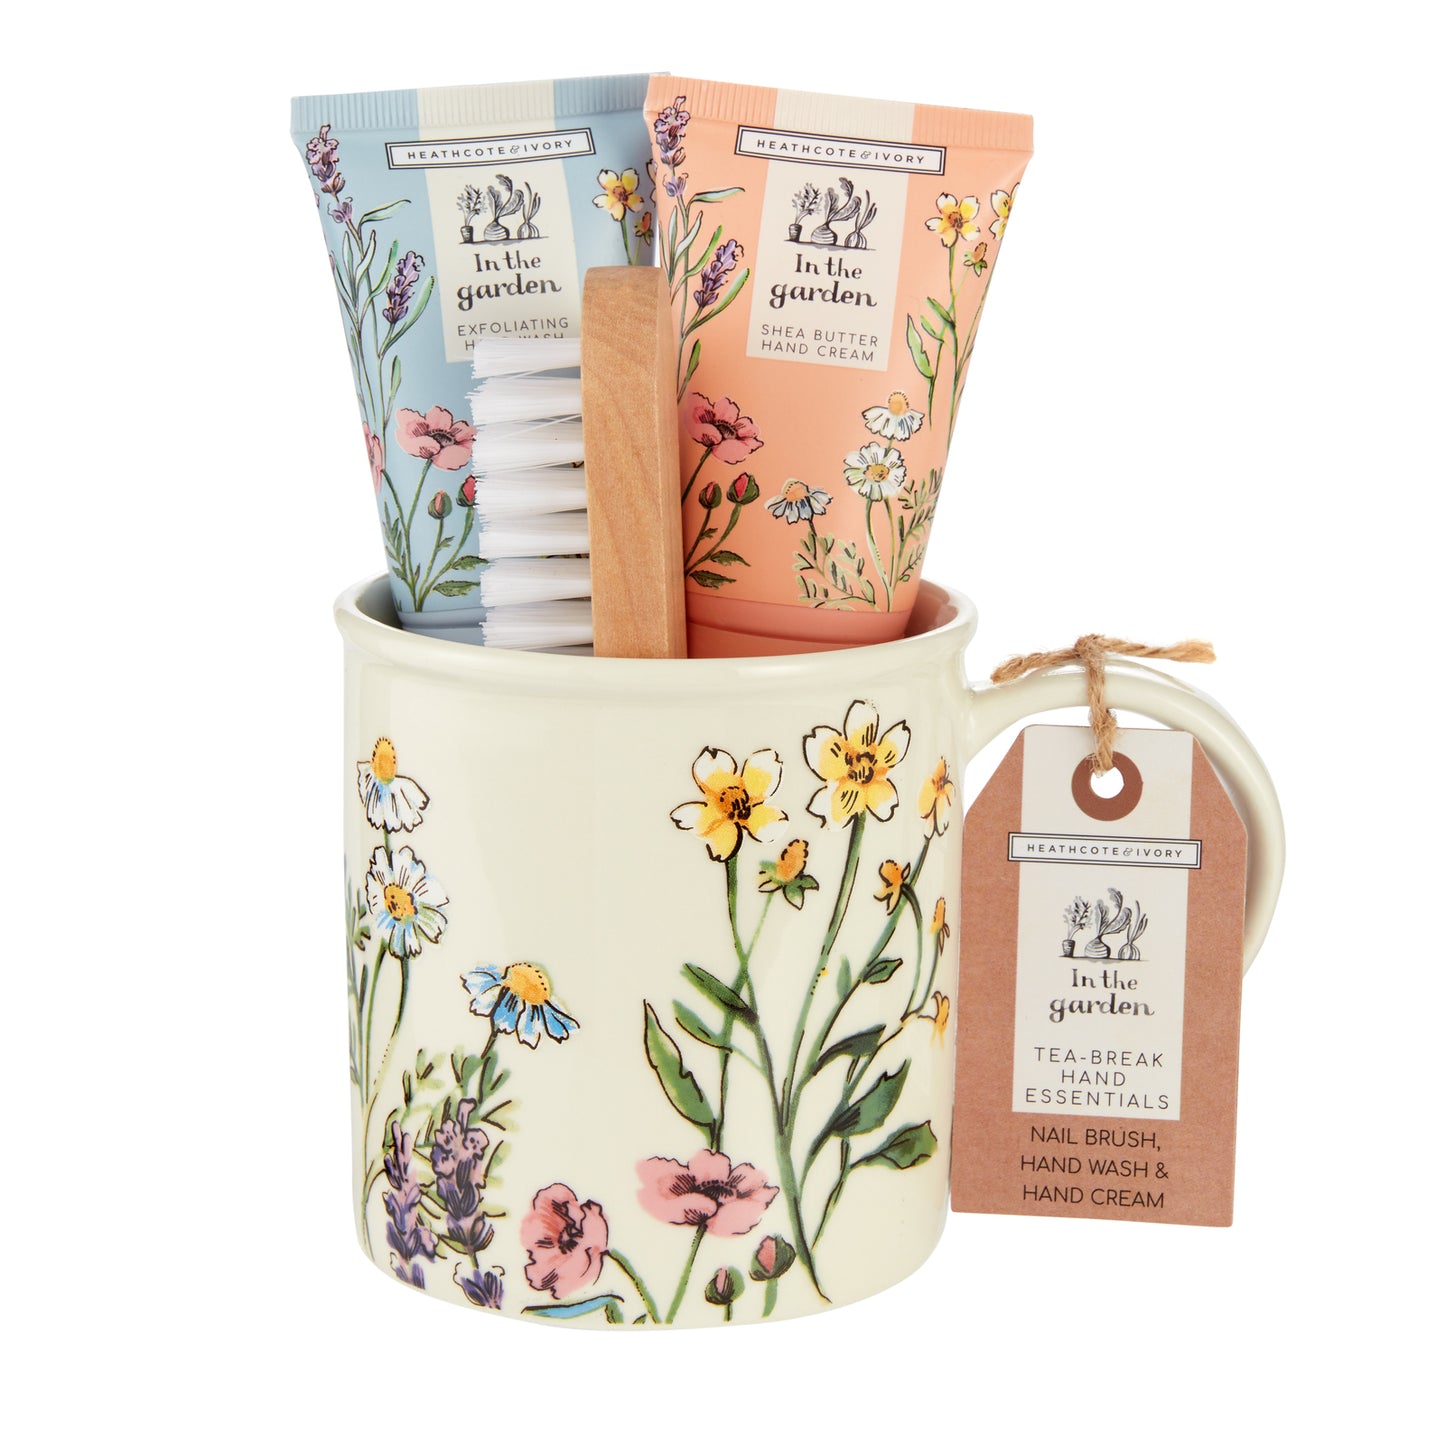 Heathcote & Ivory In The Garden Tea Break Hand Essentials 4 Piece Gift Set